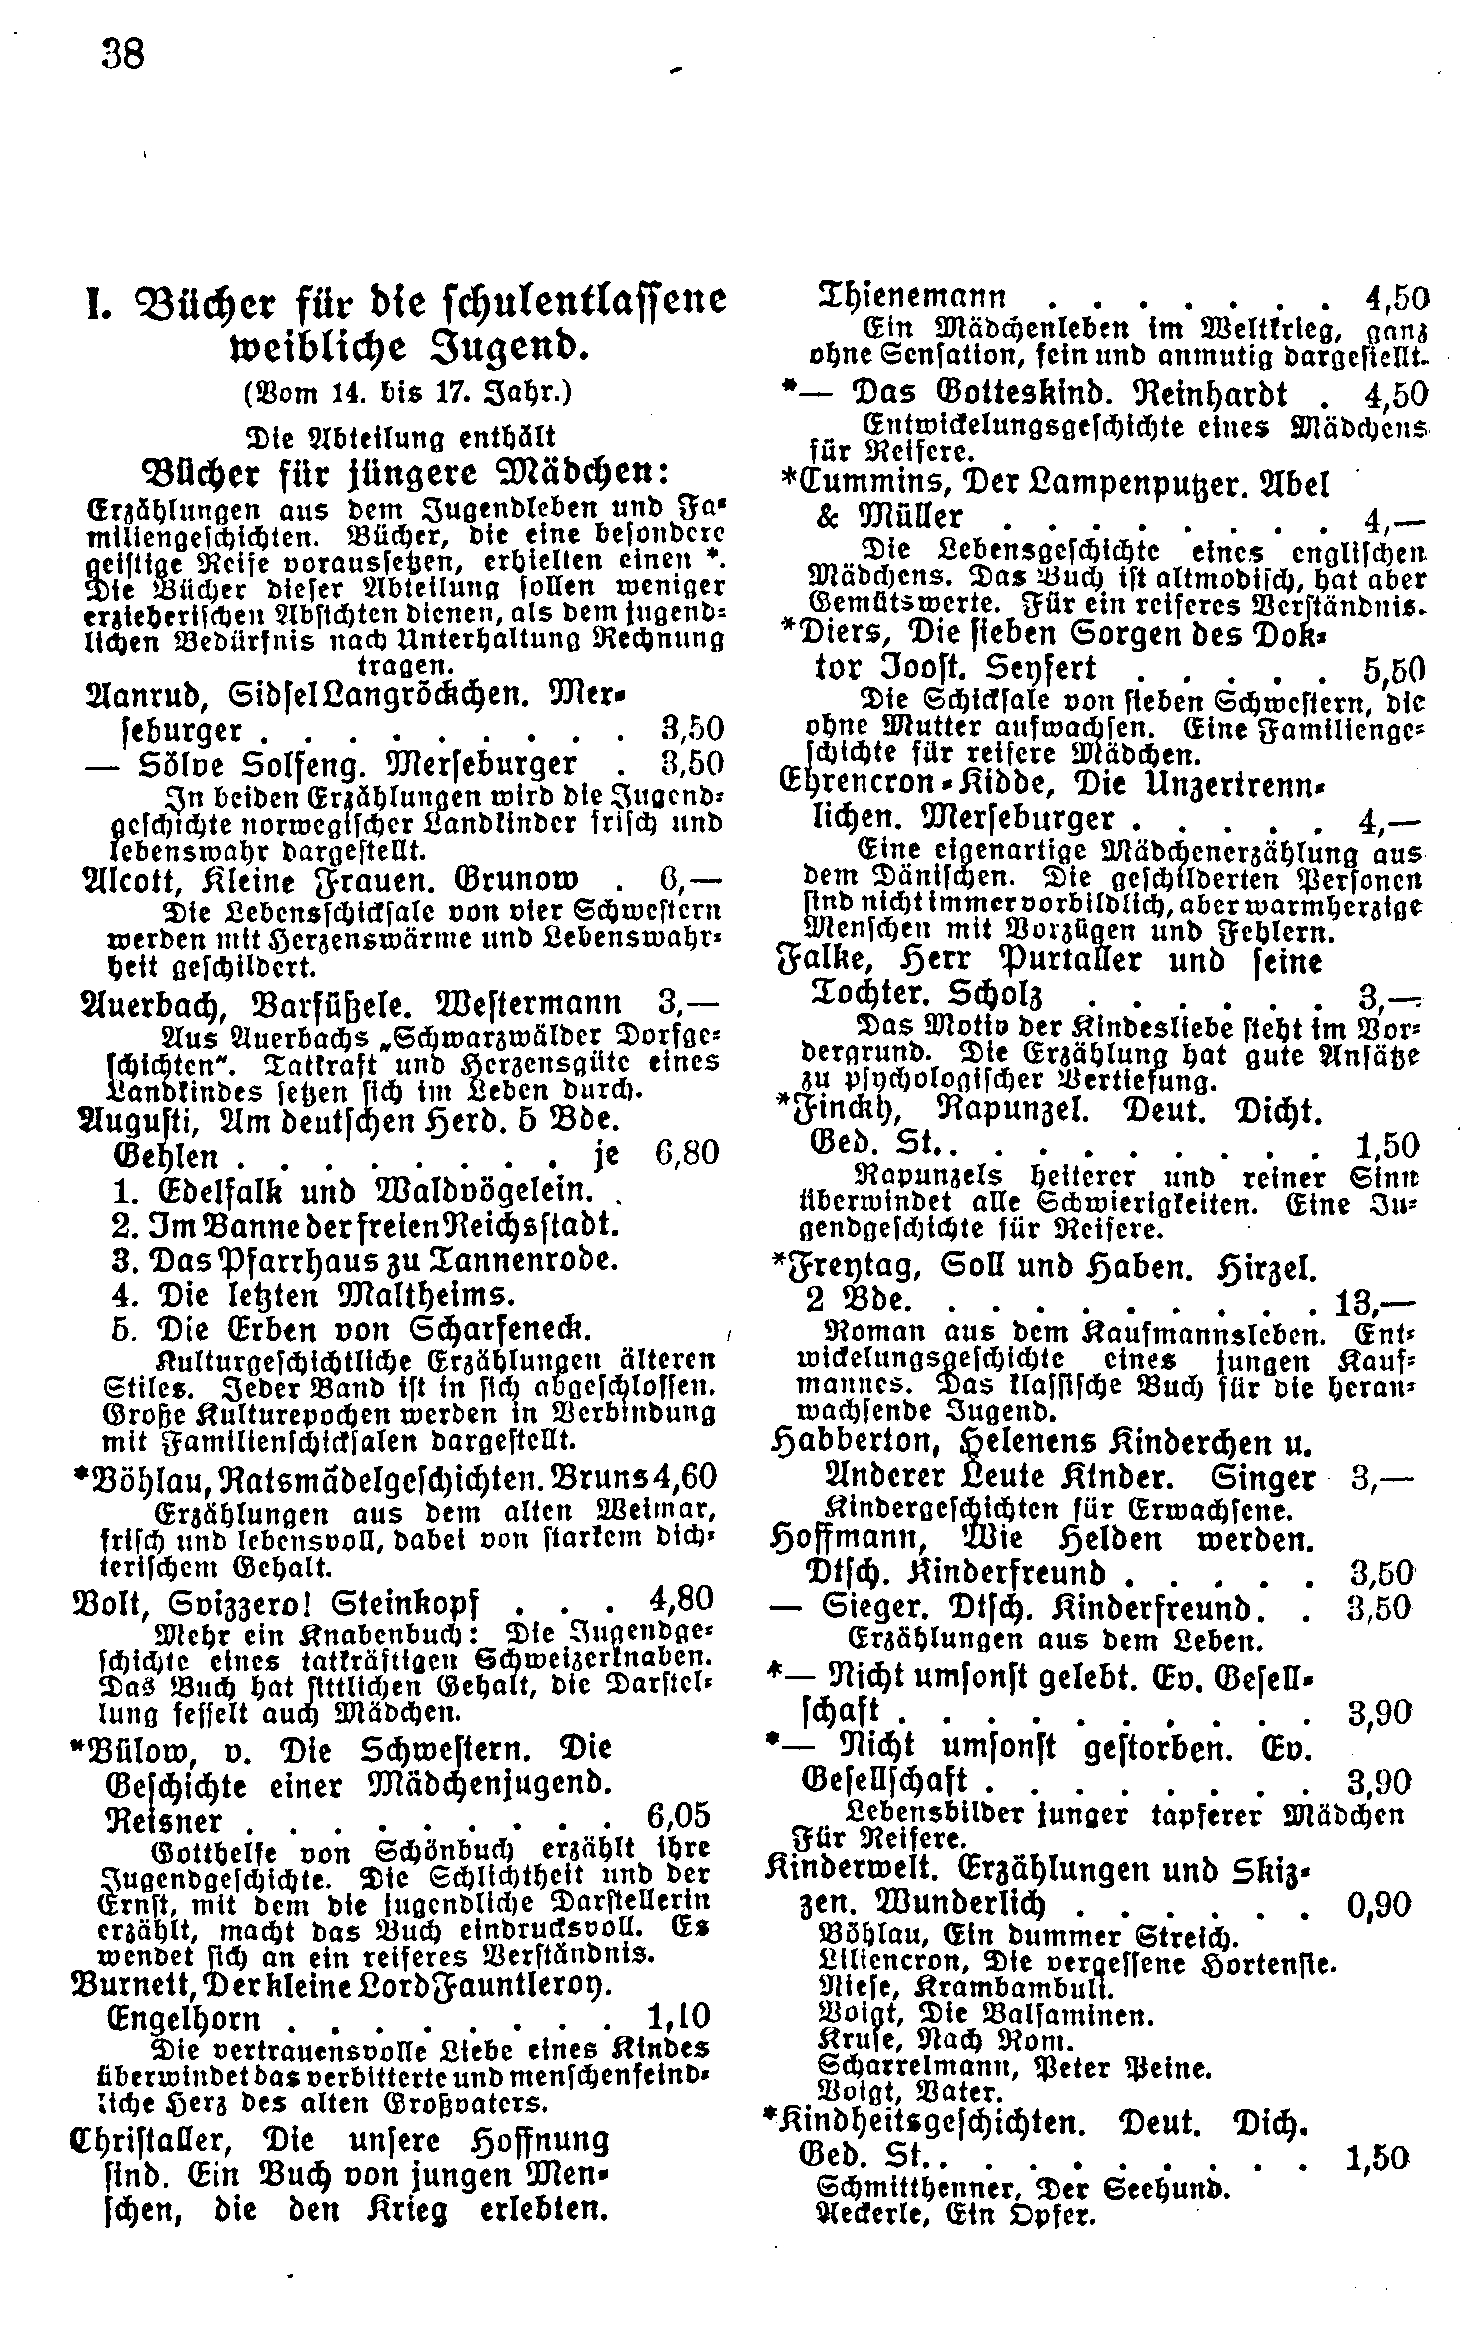 Verein zur Verbreitung guter volkstümlicher Schriften 1918a: 38.